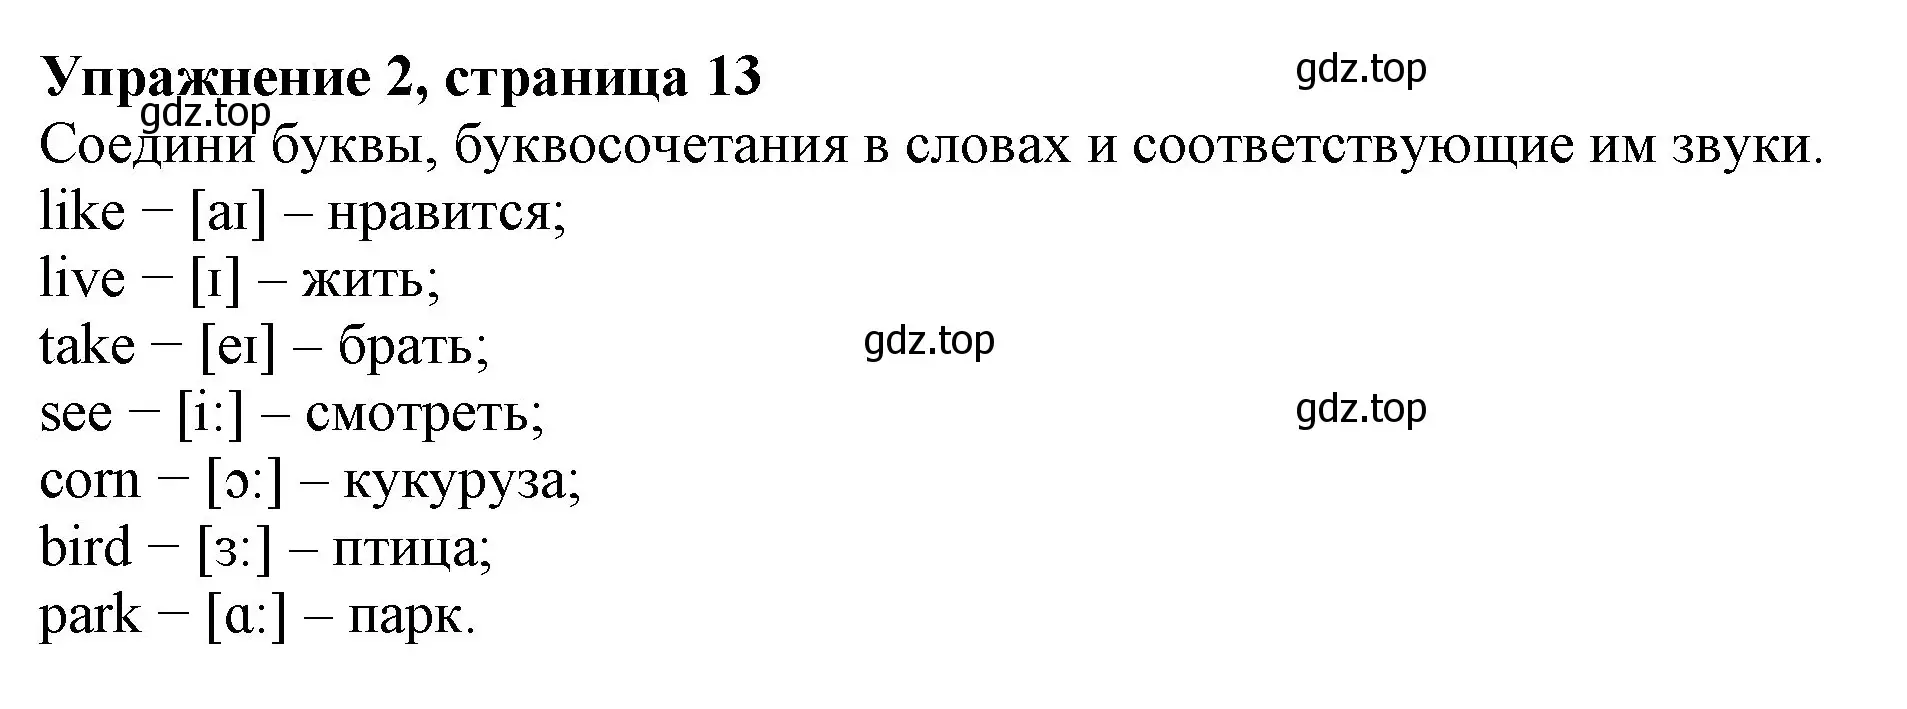 Решение номер 2 (страница 13) гдз по английскому языку 3 класс Биболетова, Денисенко, рабочая тетрадь